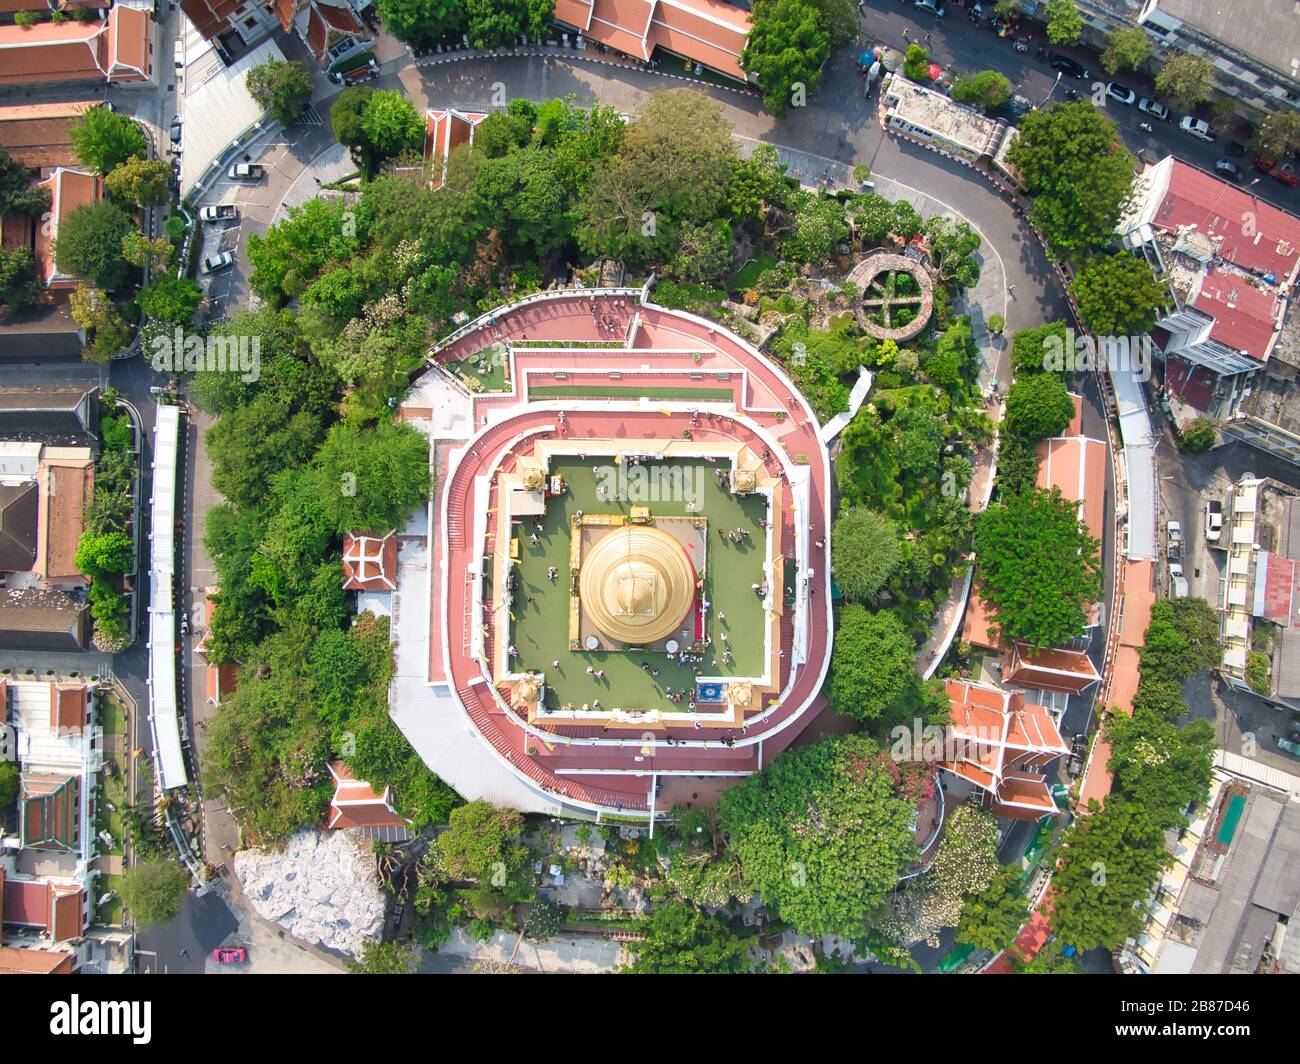 Drone Von Oben. Wat Saket, der Tempel des goldenen Berges, Reise-Wahrzeichen von Bangkok, Thailand. Stockfoto